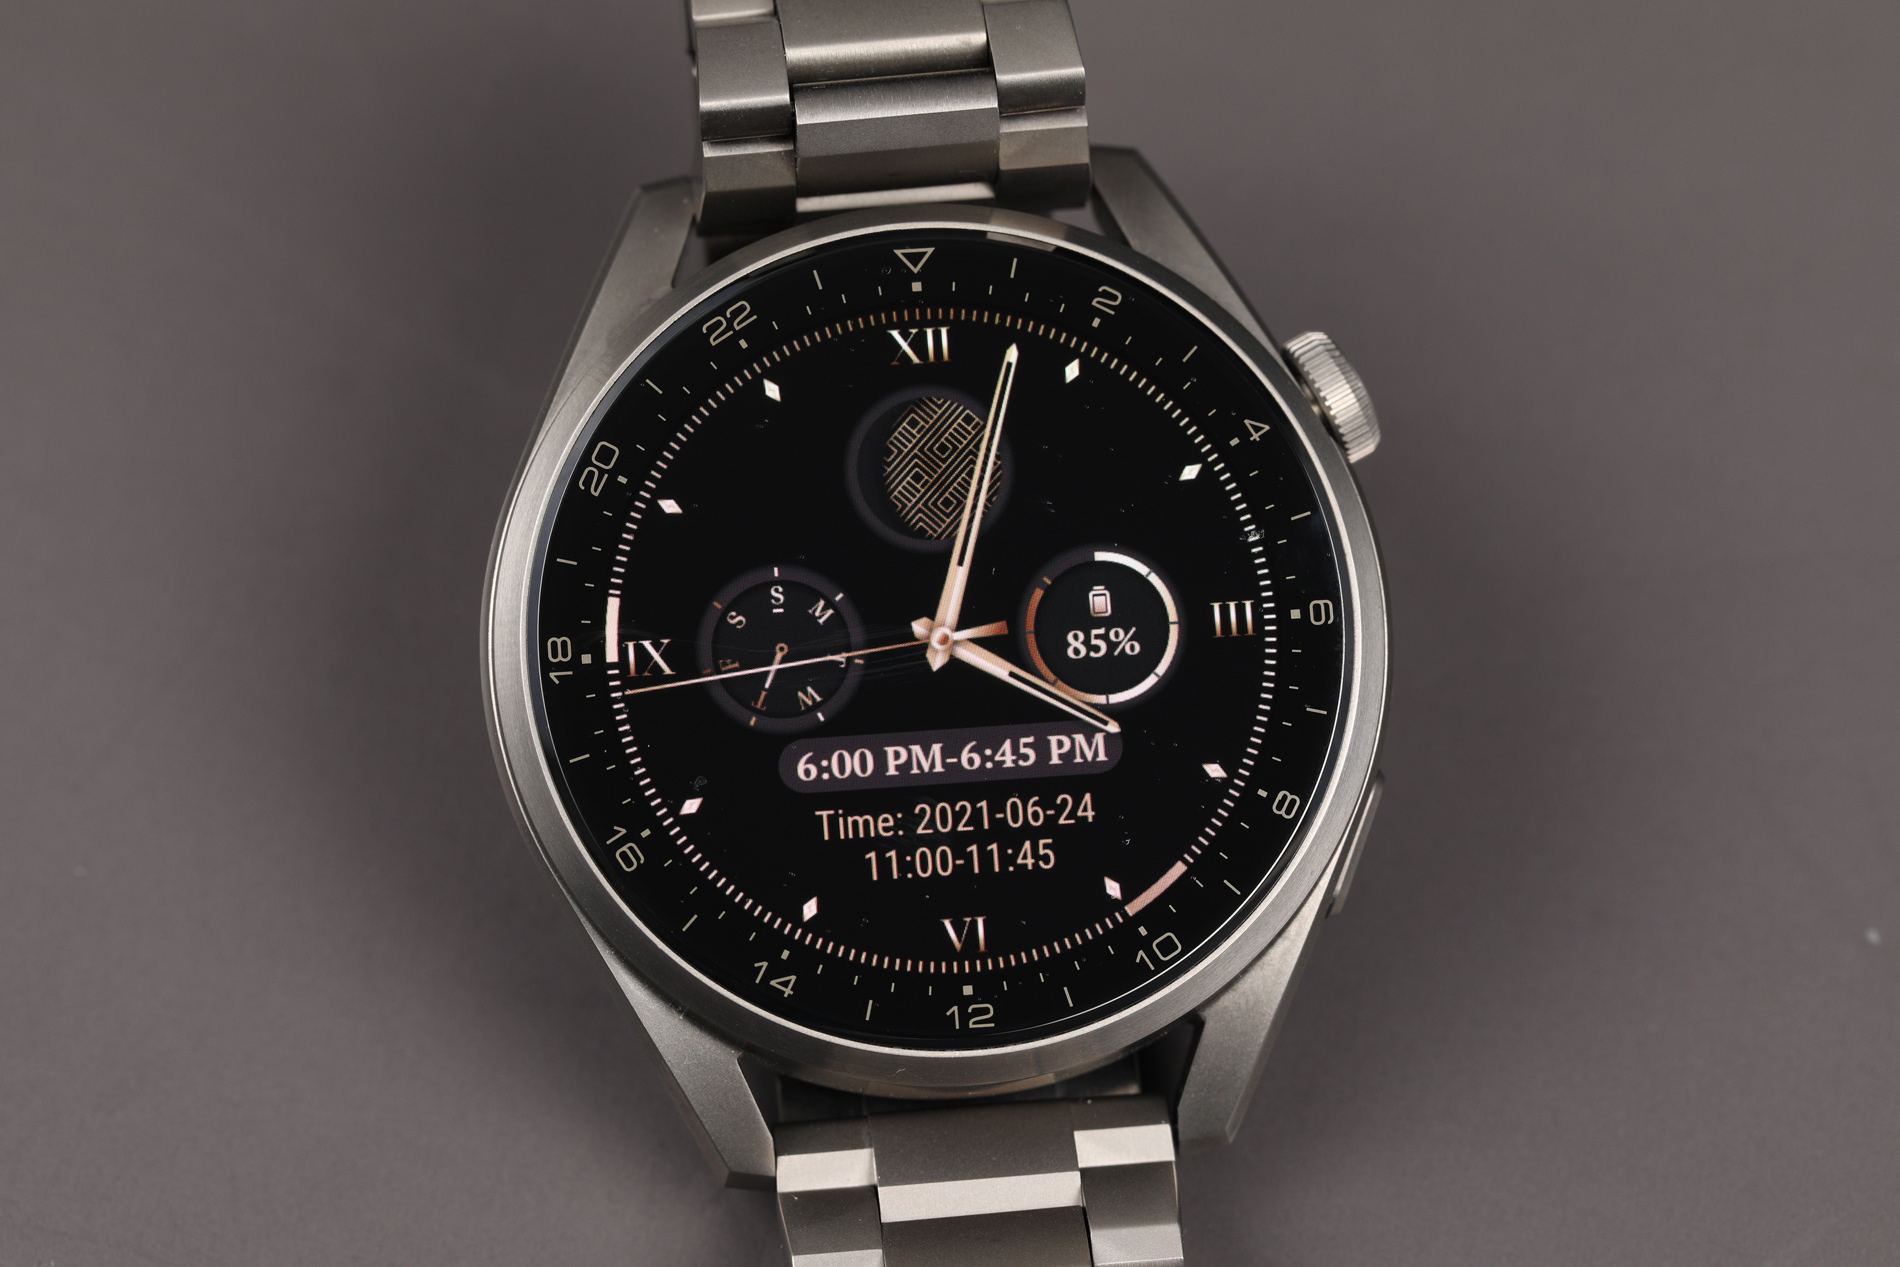 Tactil, controlabil și interactiv, noul smartwatch HUAWEI WATCH 3 aduce imagini de fundal pentru ceas cu design ușor de personalizat